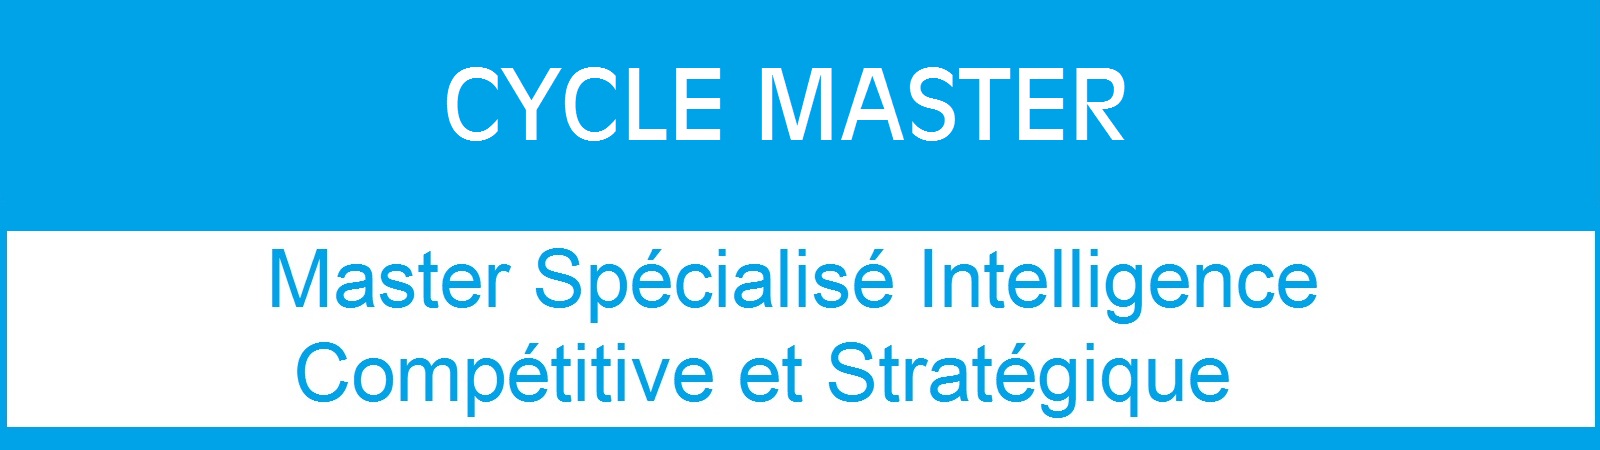 Avis de concours d’accès aux Masters Spécialisés (2022-2023) – Intelligence compétitive et stratégique